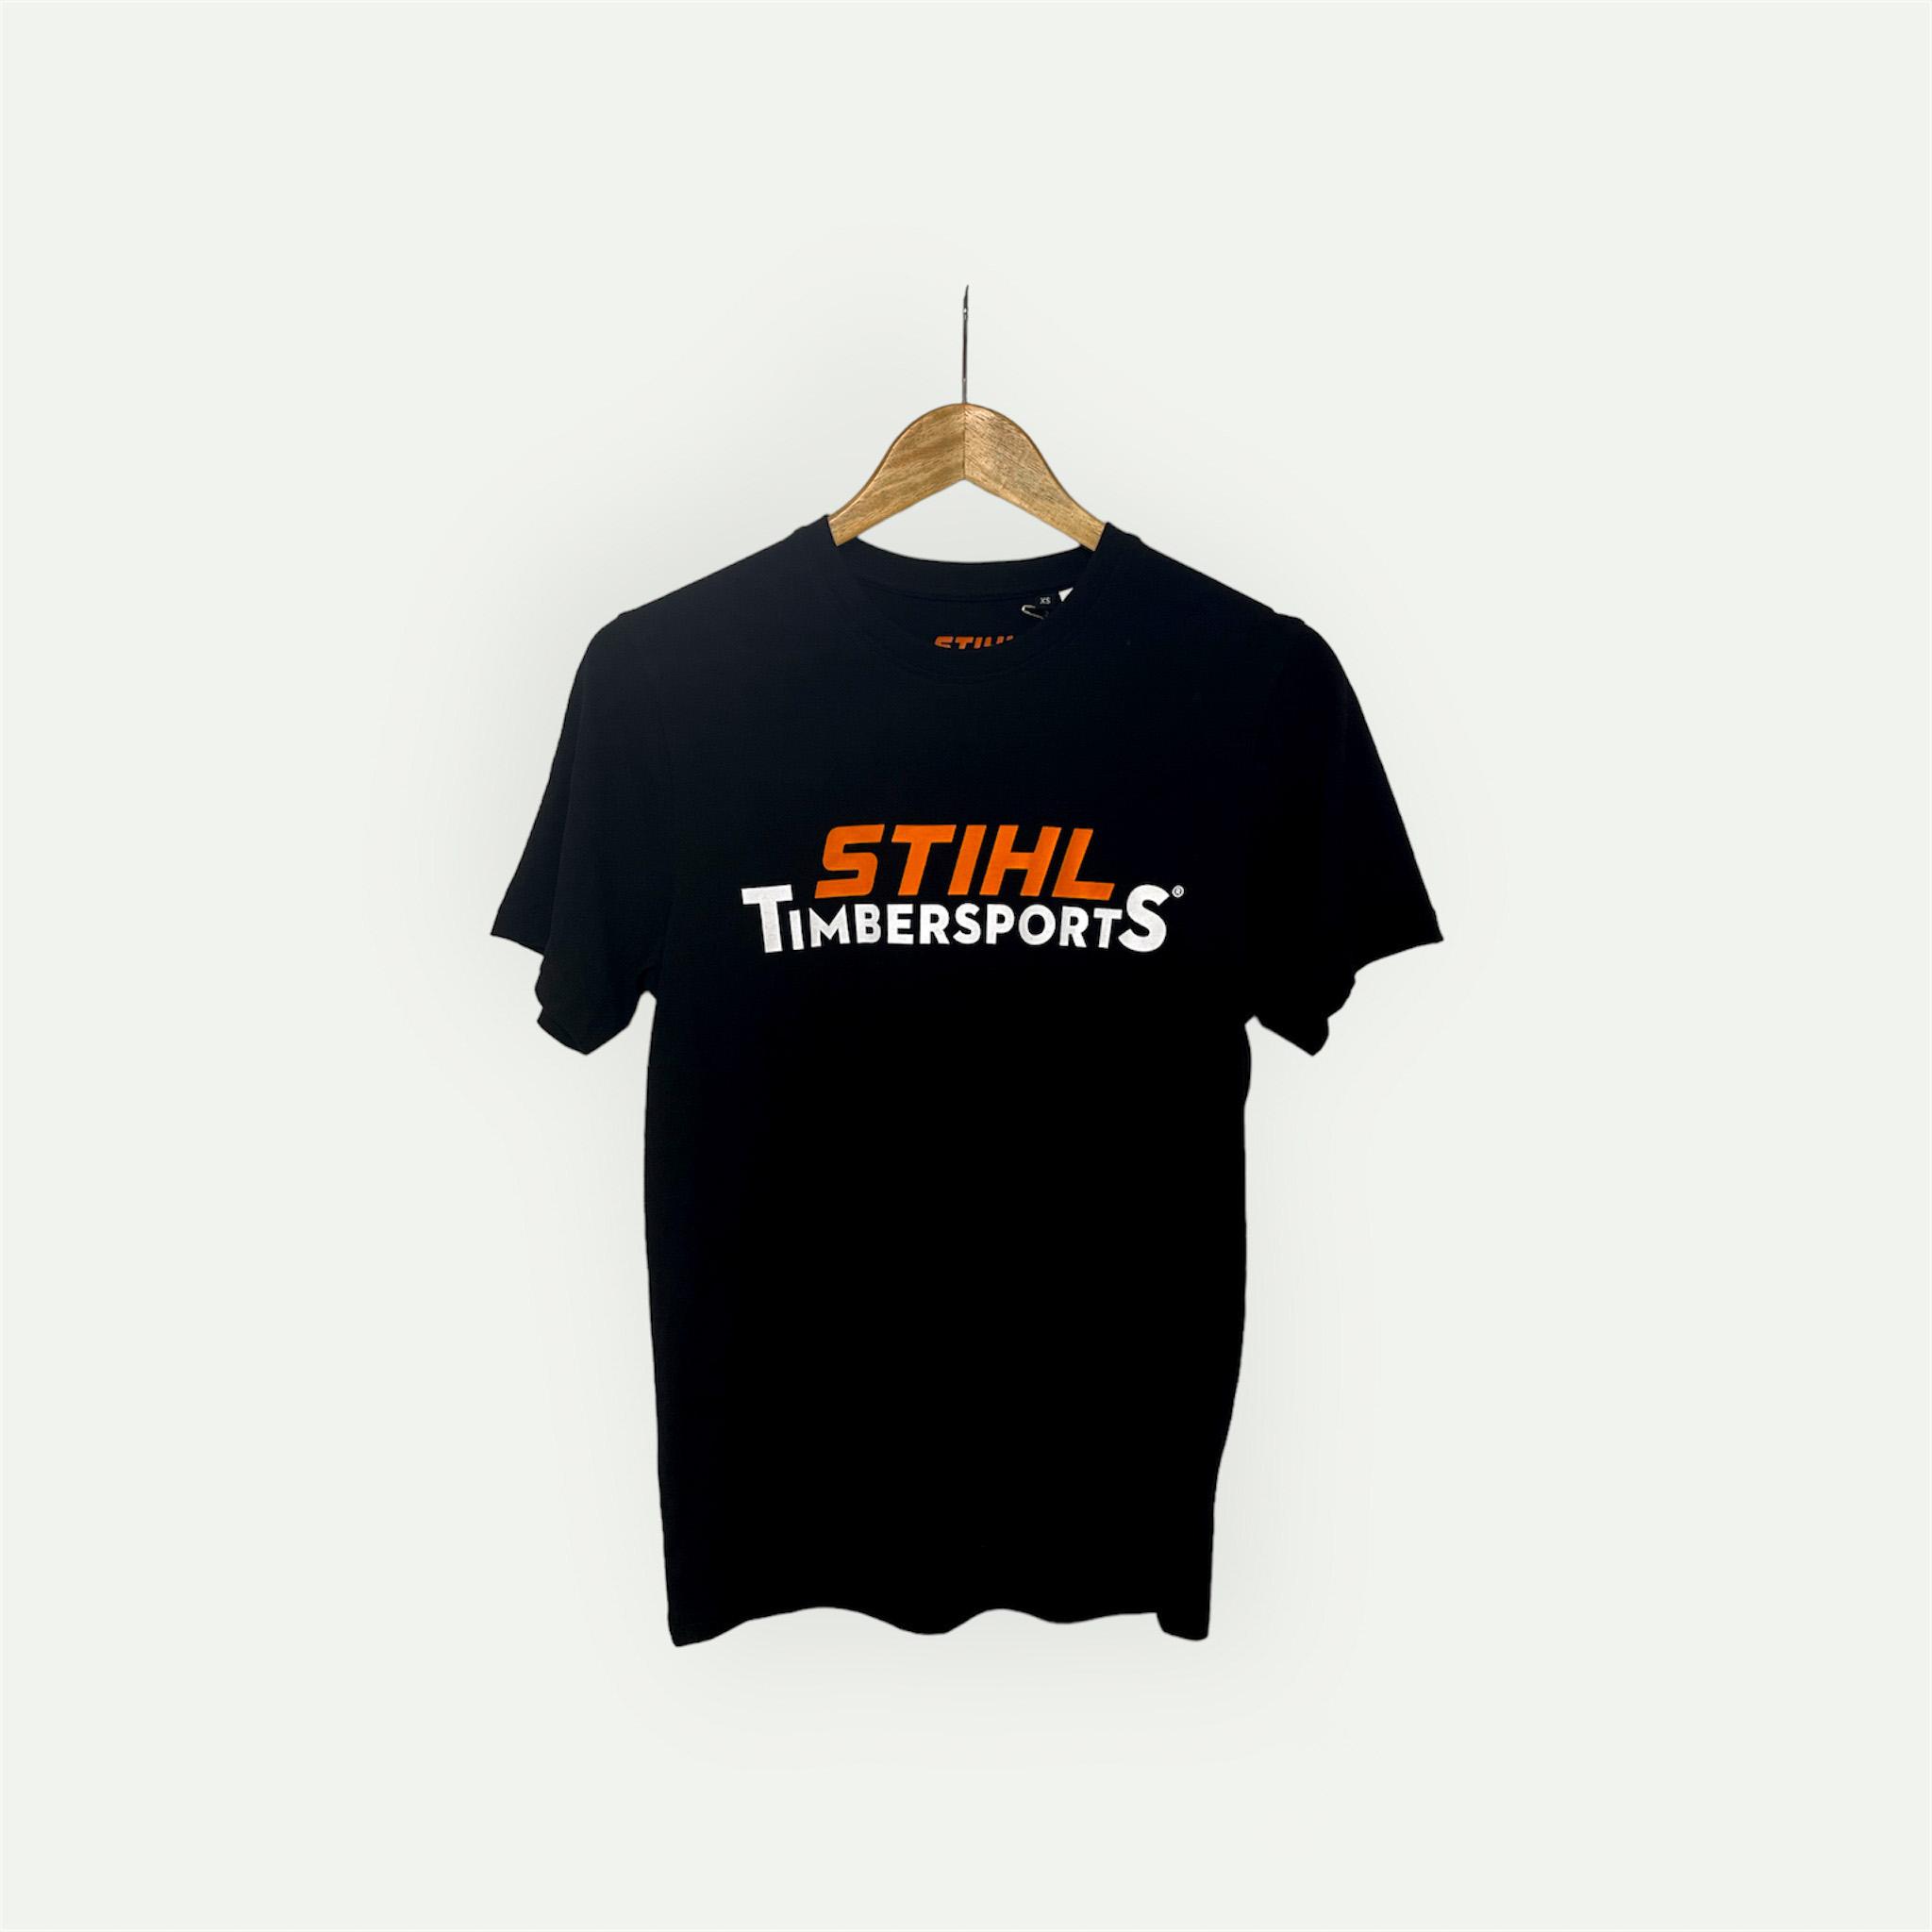 t-shirt Stihl Timbersports